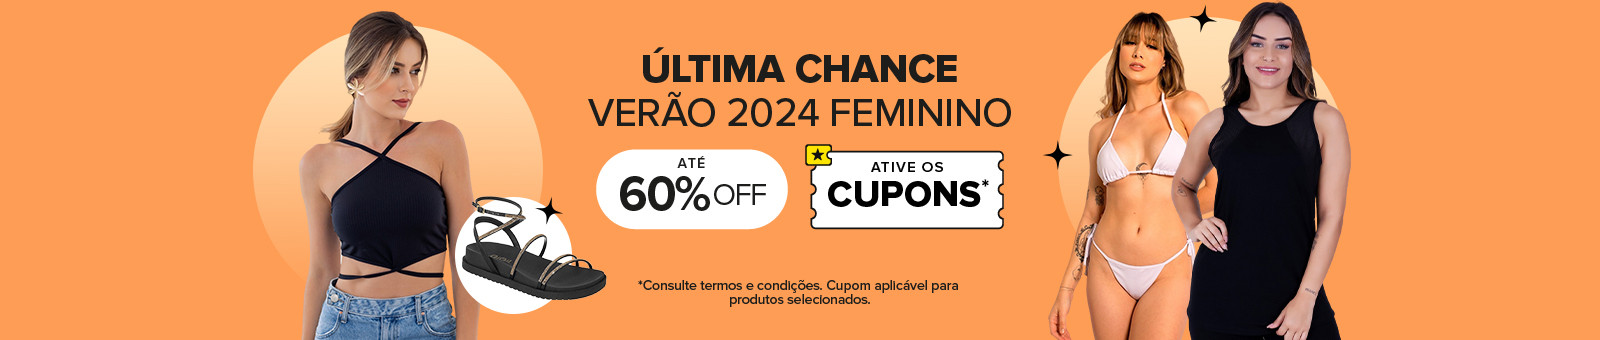 Última Chance Verão 2024 Feminino - até 60%